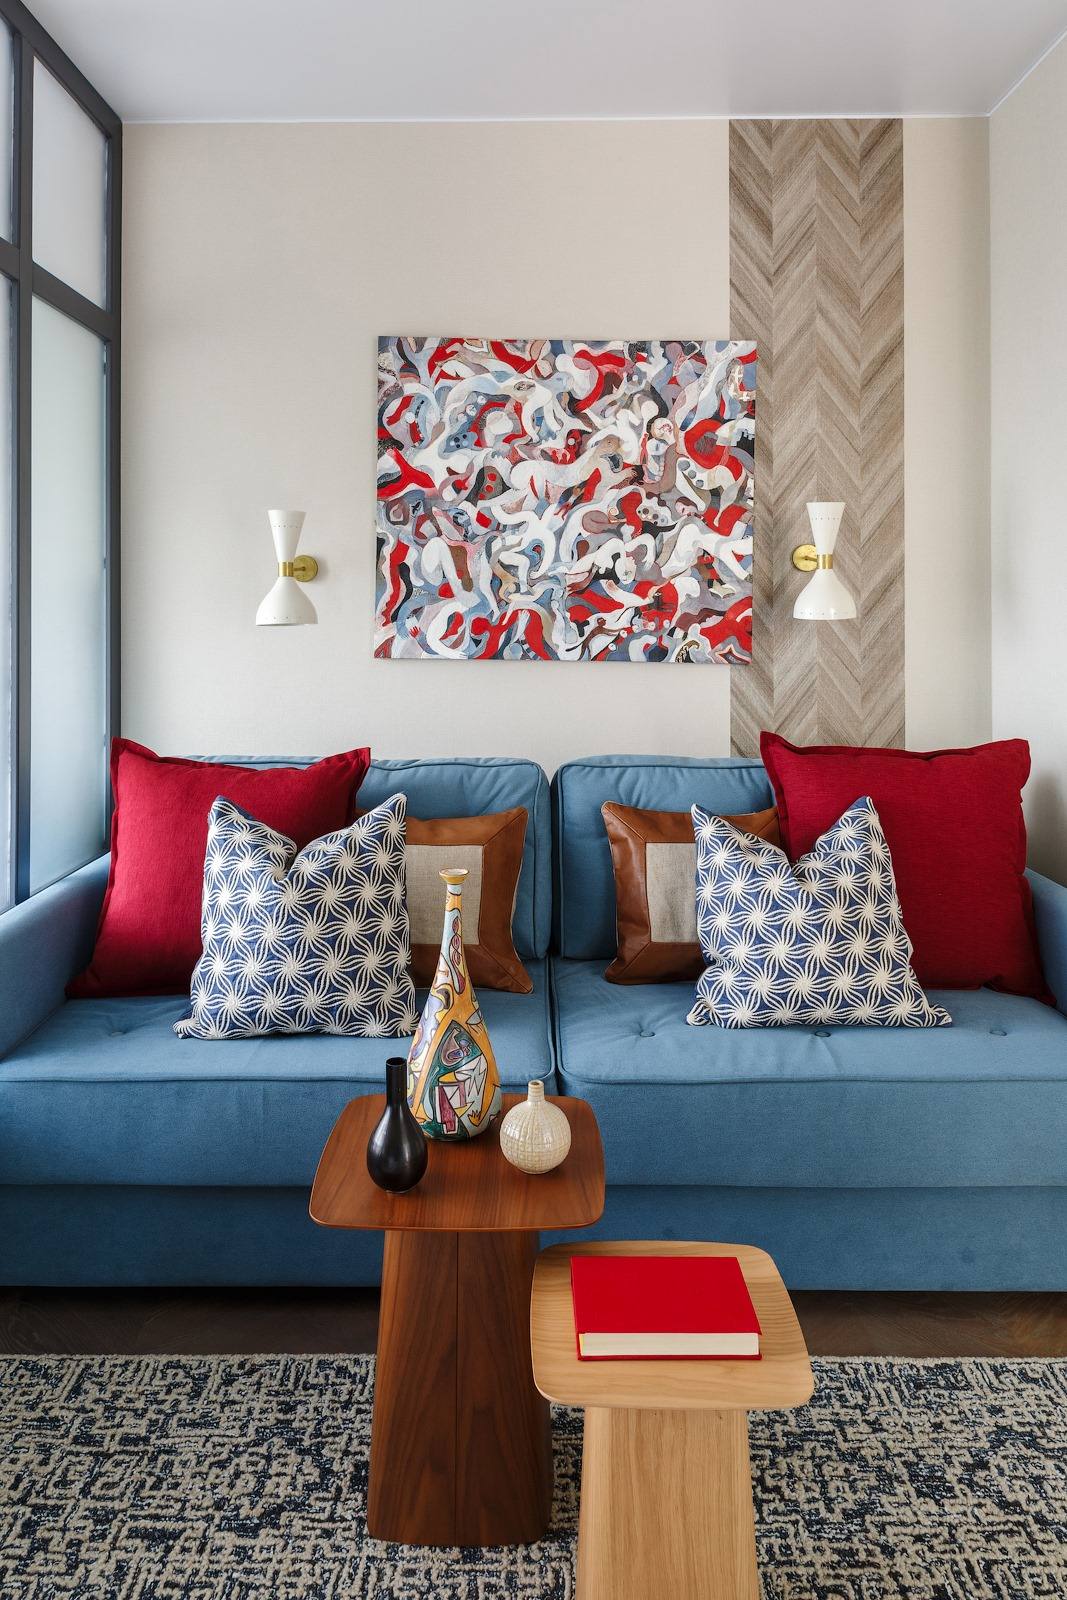 Phòng khách bố trí ghế sofa màu xanh lam, tô điểm những chiếc gối màu đỏ, nâu, xanh, trắng, kết hợp bức tranh trừu tượng như tổng hòa tất cả các màu sắc trên. Bộ bàn nước gỗ 2 tông màu đậm nhạt đơn giản mà tinh tế với những lọ gốm sứ trang trí.